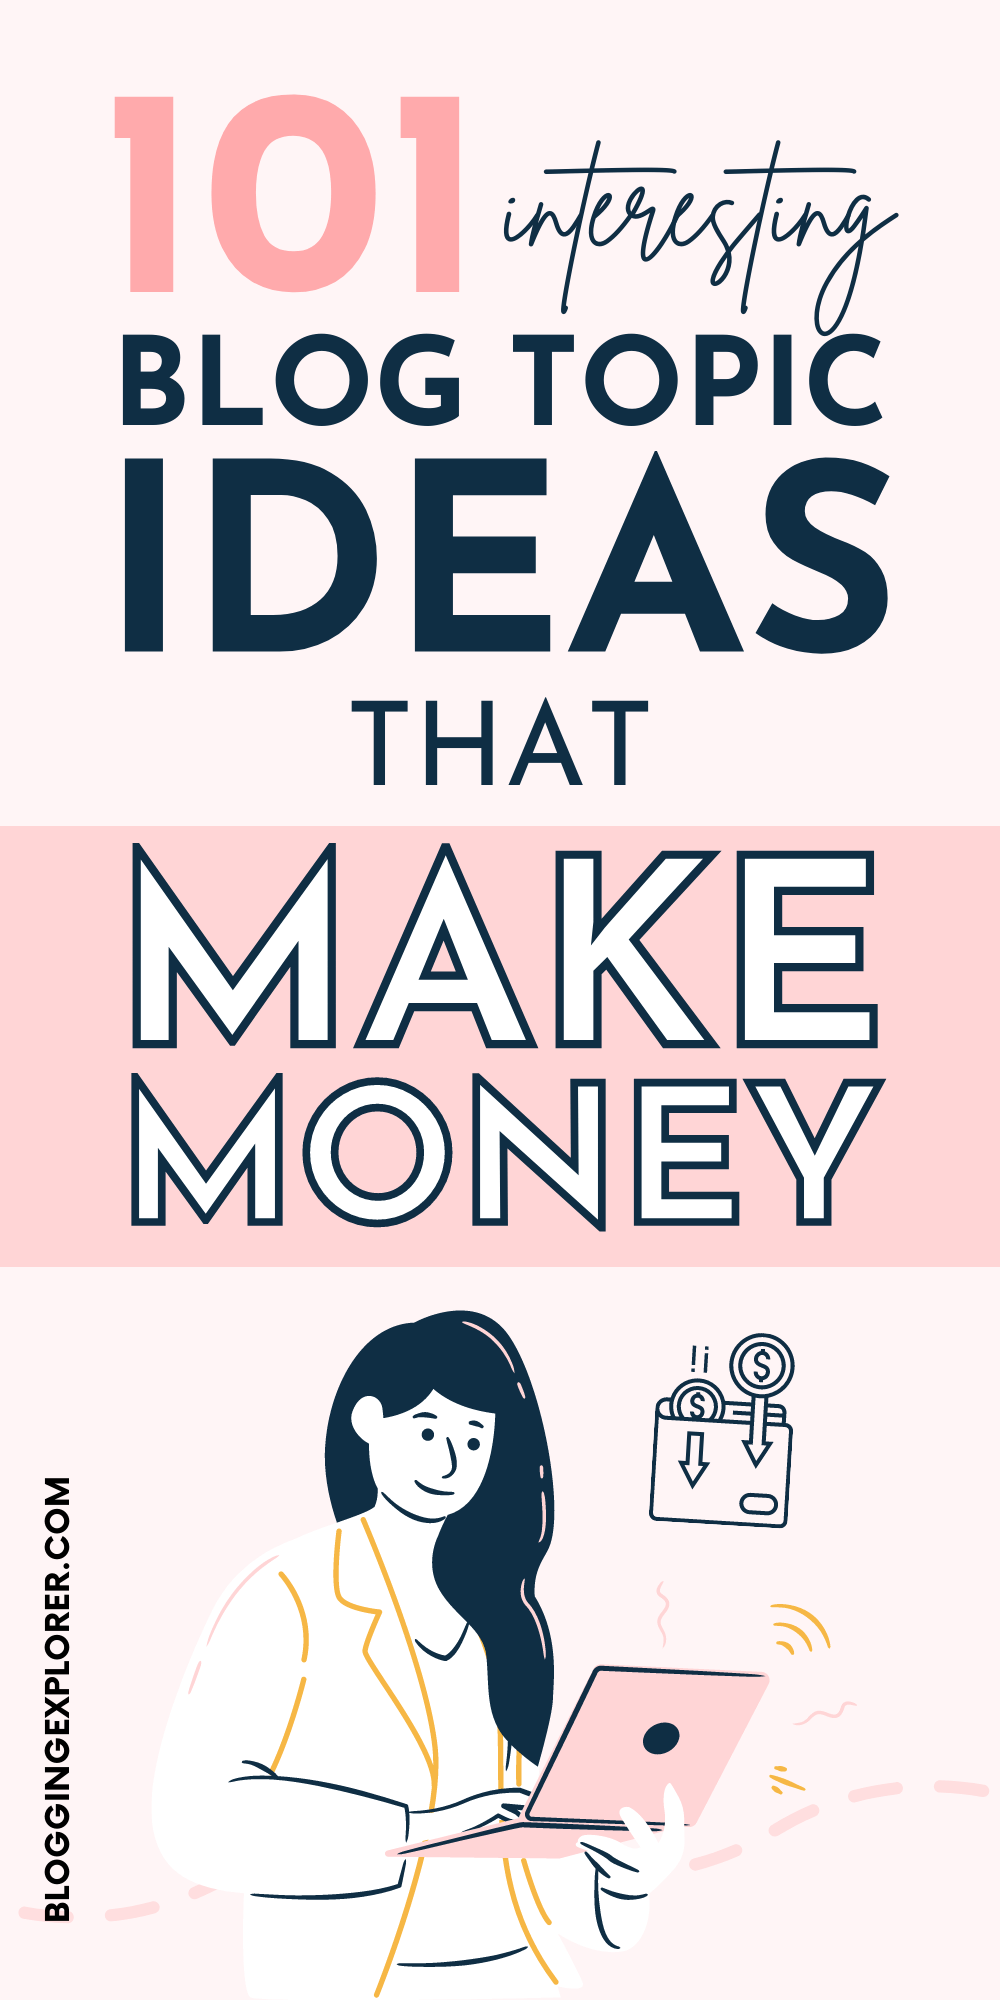 100+ Profitable Blog Niche Ideas That Make Money in 2022